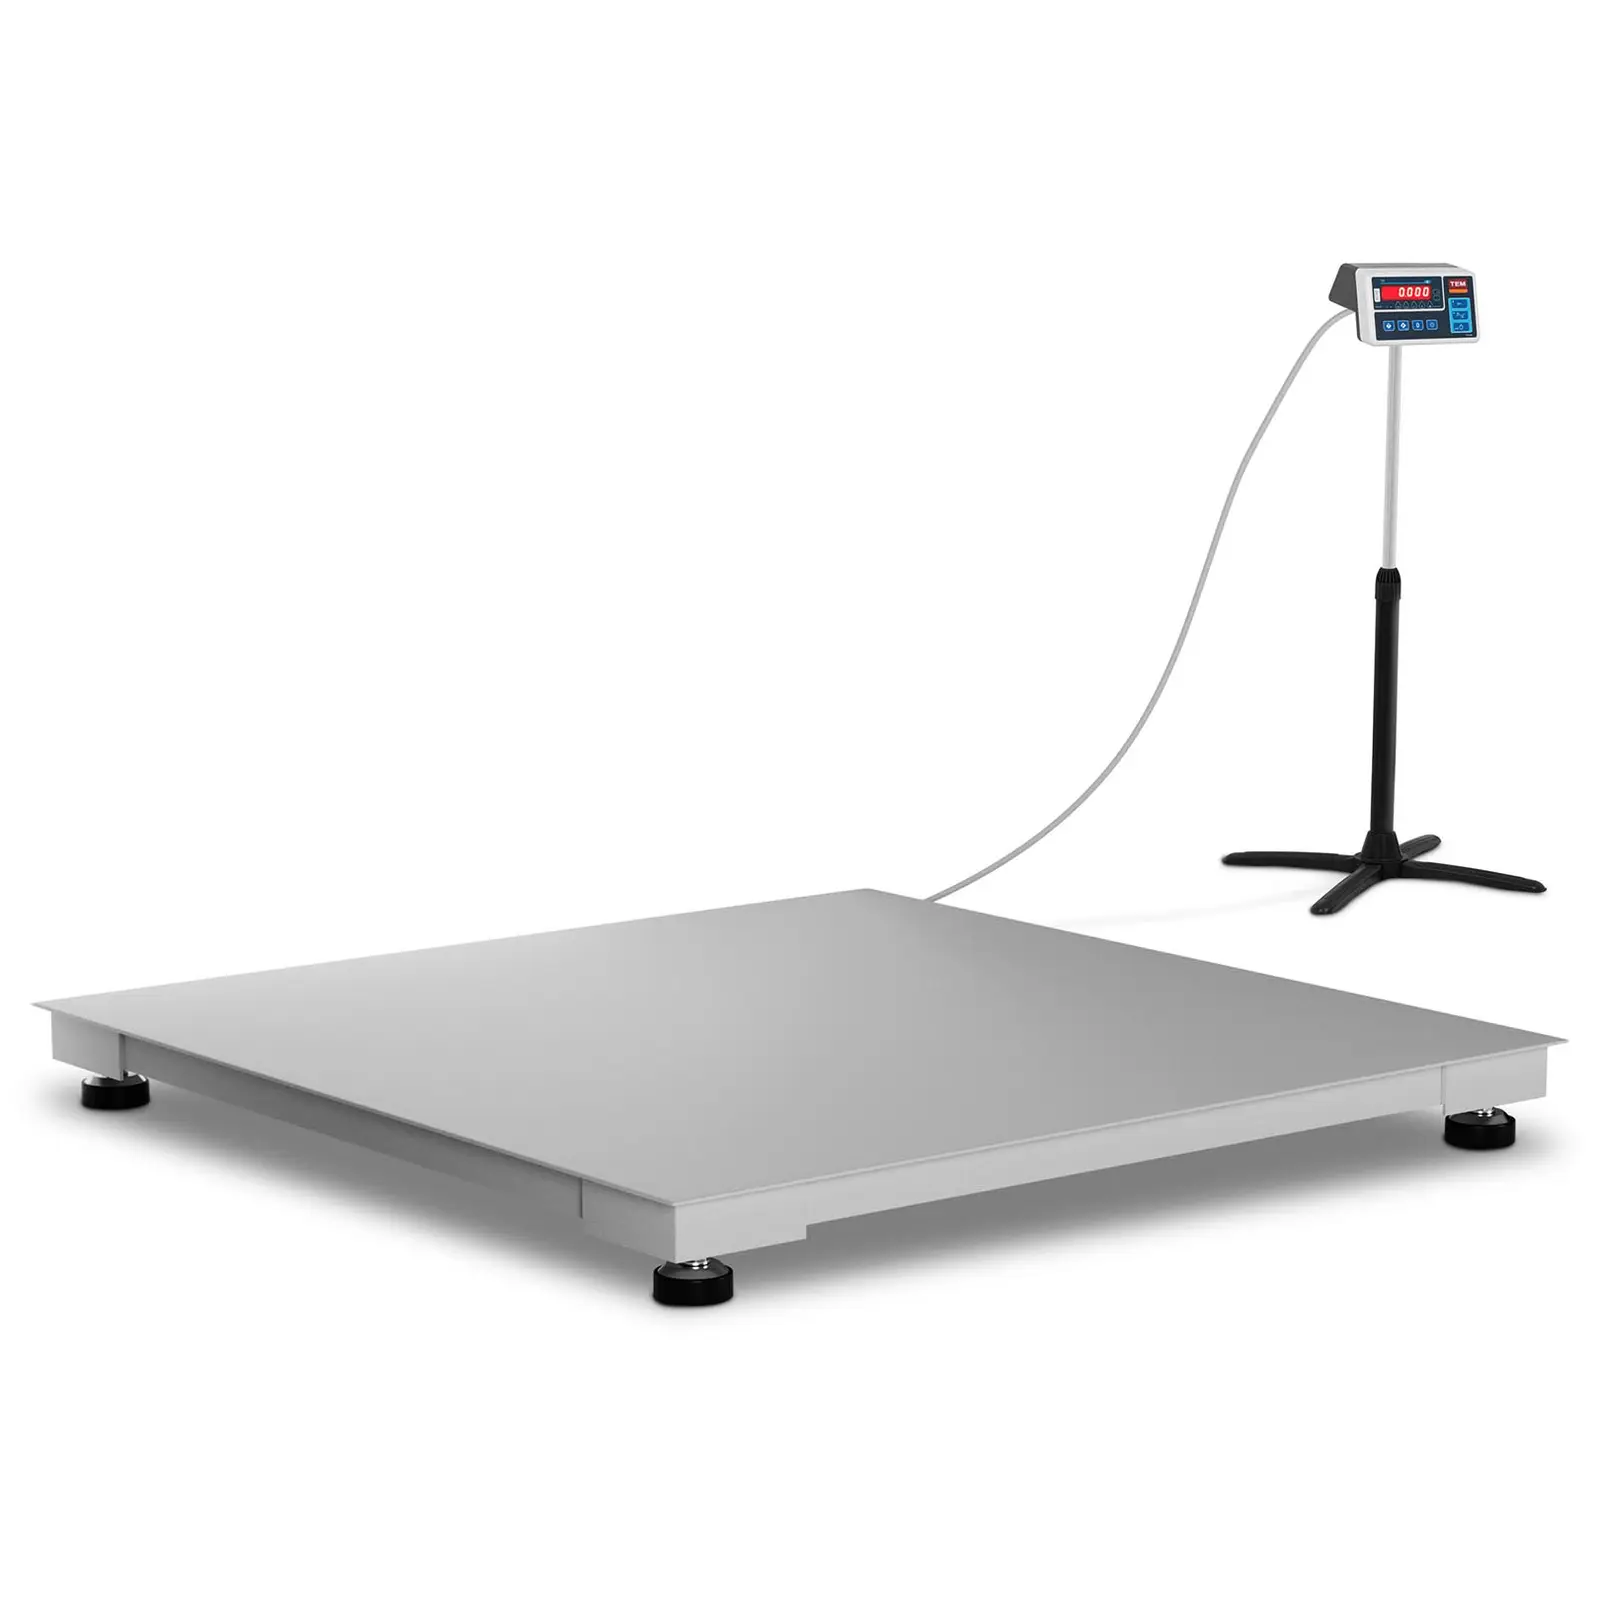 Balance au sol - Calibrage certifié - 1 500 kg / 500 g - 120 x 120 cm - LED